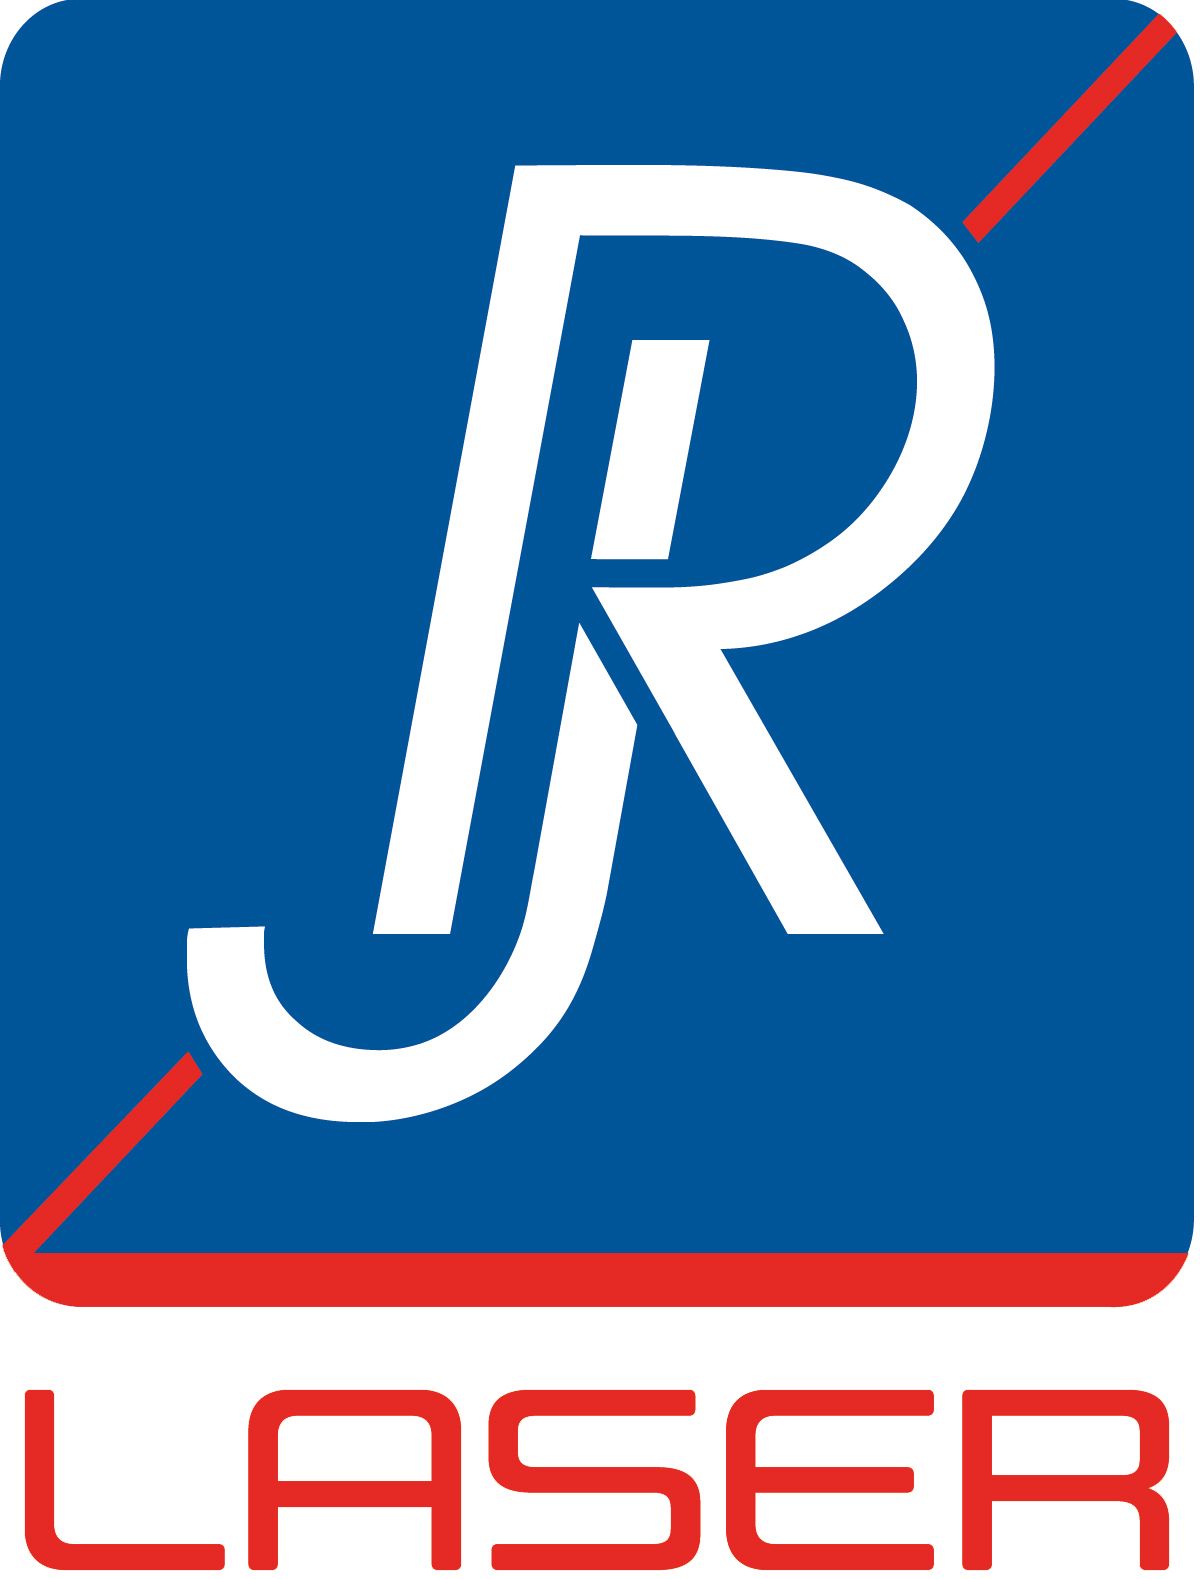 Reimers & Janssen GmbH